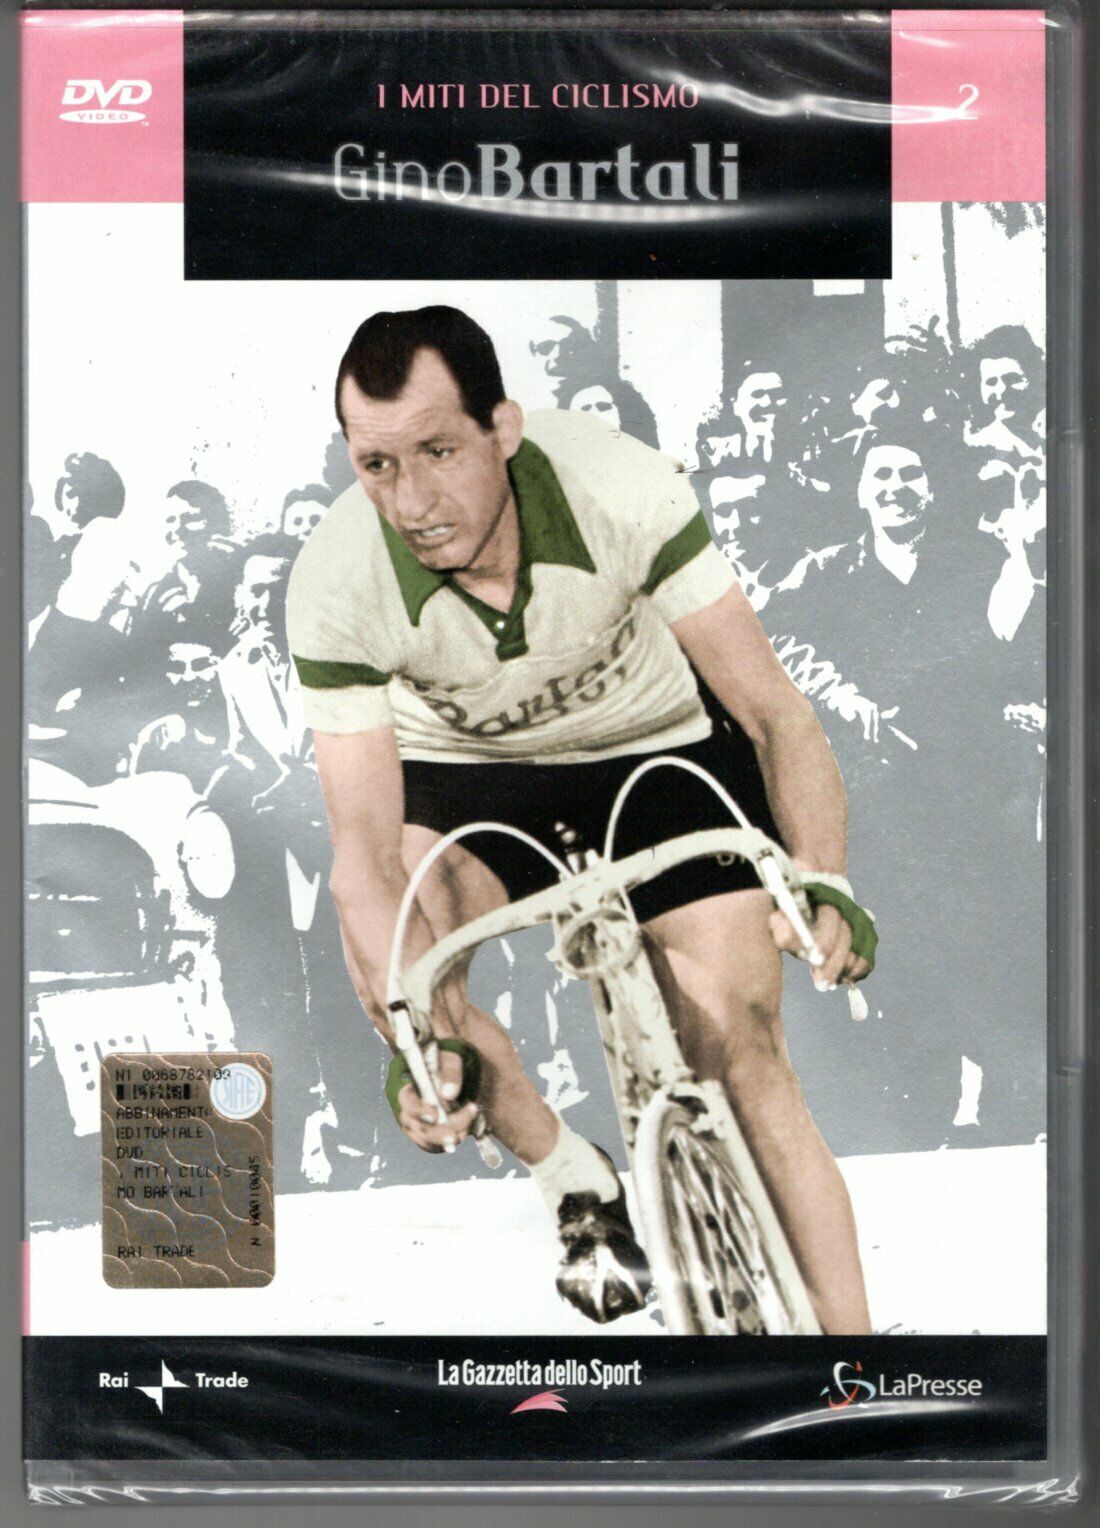 I miti del ciclismo - Gino Bartali 2005